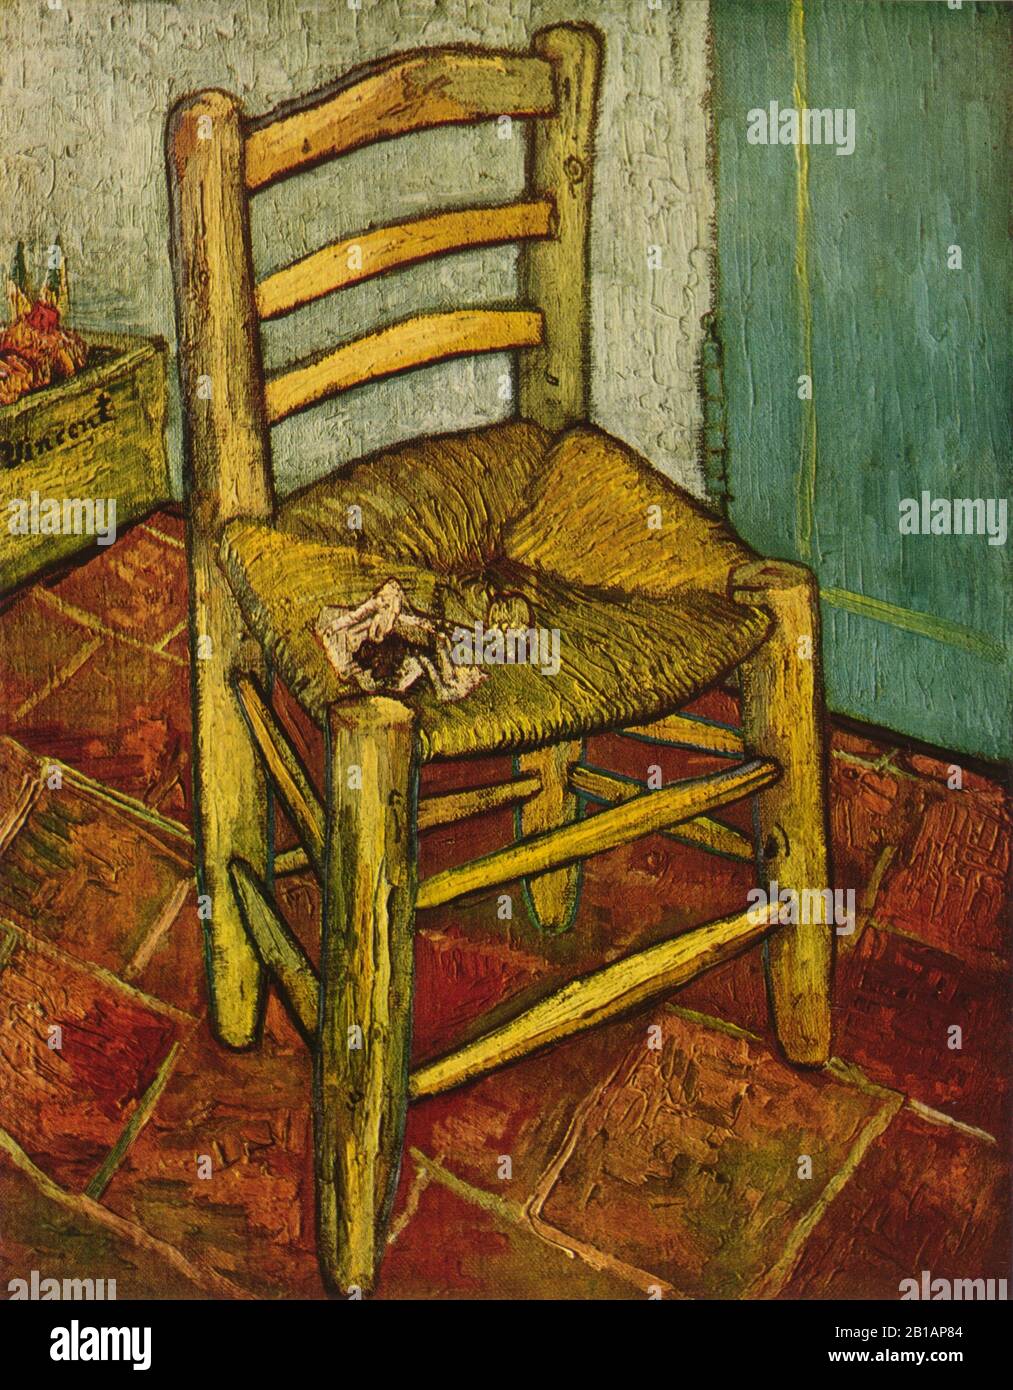 Van Gogh's Chair, 1889 - dipinto di Vincent van Gogh - immagine Di alta risoluzione e qualità Foto Stock